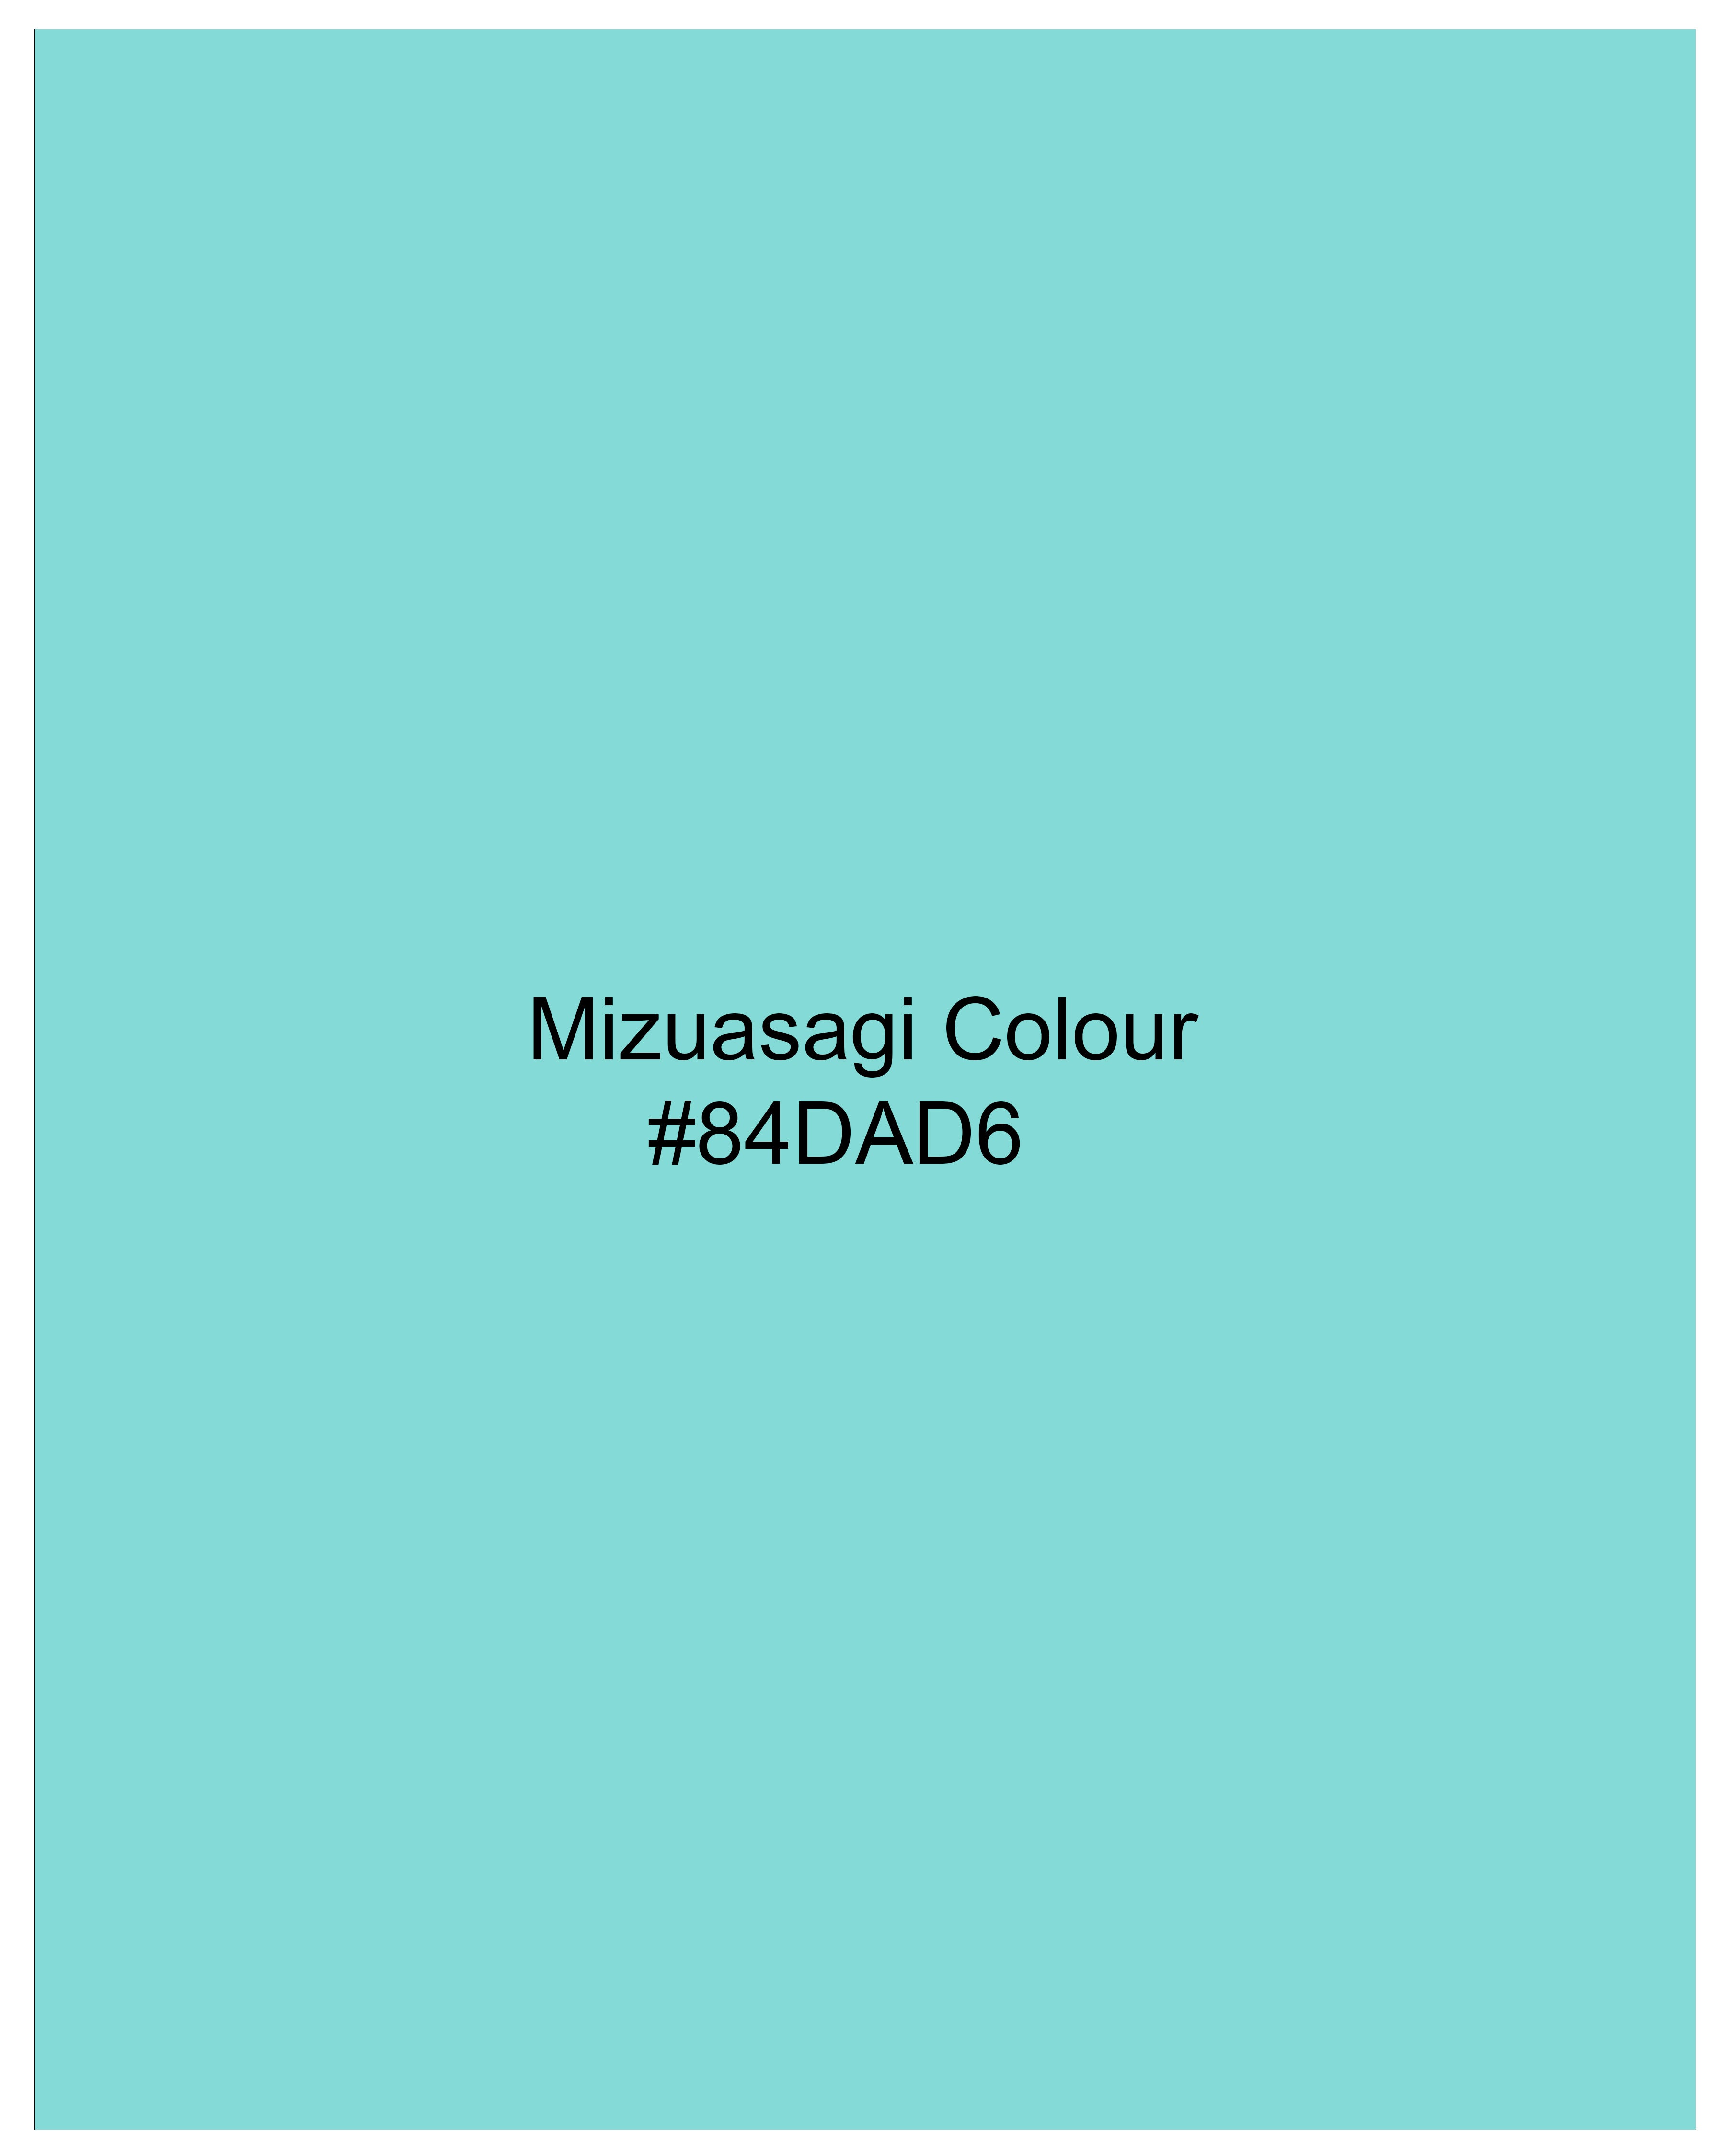 Mizuasagi Aqua Blue Luxurious Linen Shirt 9822-38, 9822-H-38, 9822-39, 9822-H-39, 9822-40, 9822-H-40, 9822-42, 9822-H-42, 9822-44, 9822-H-44, 9822-46, 9822-H-46, 9822-48, 9822-H-48, 9822-50, 9822-H-50, 9822-52, 9822-H-52